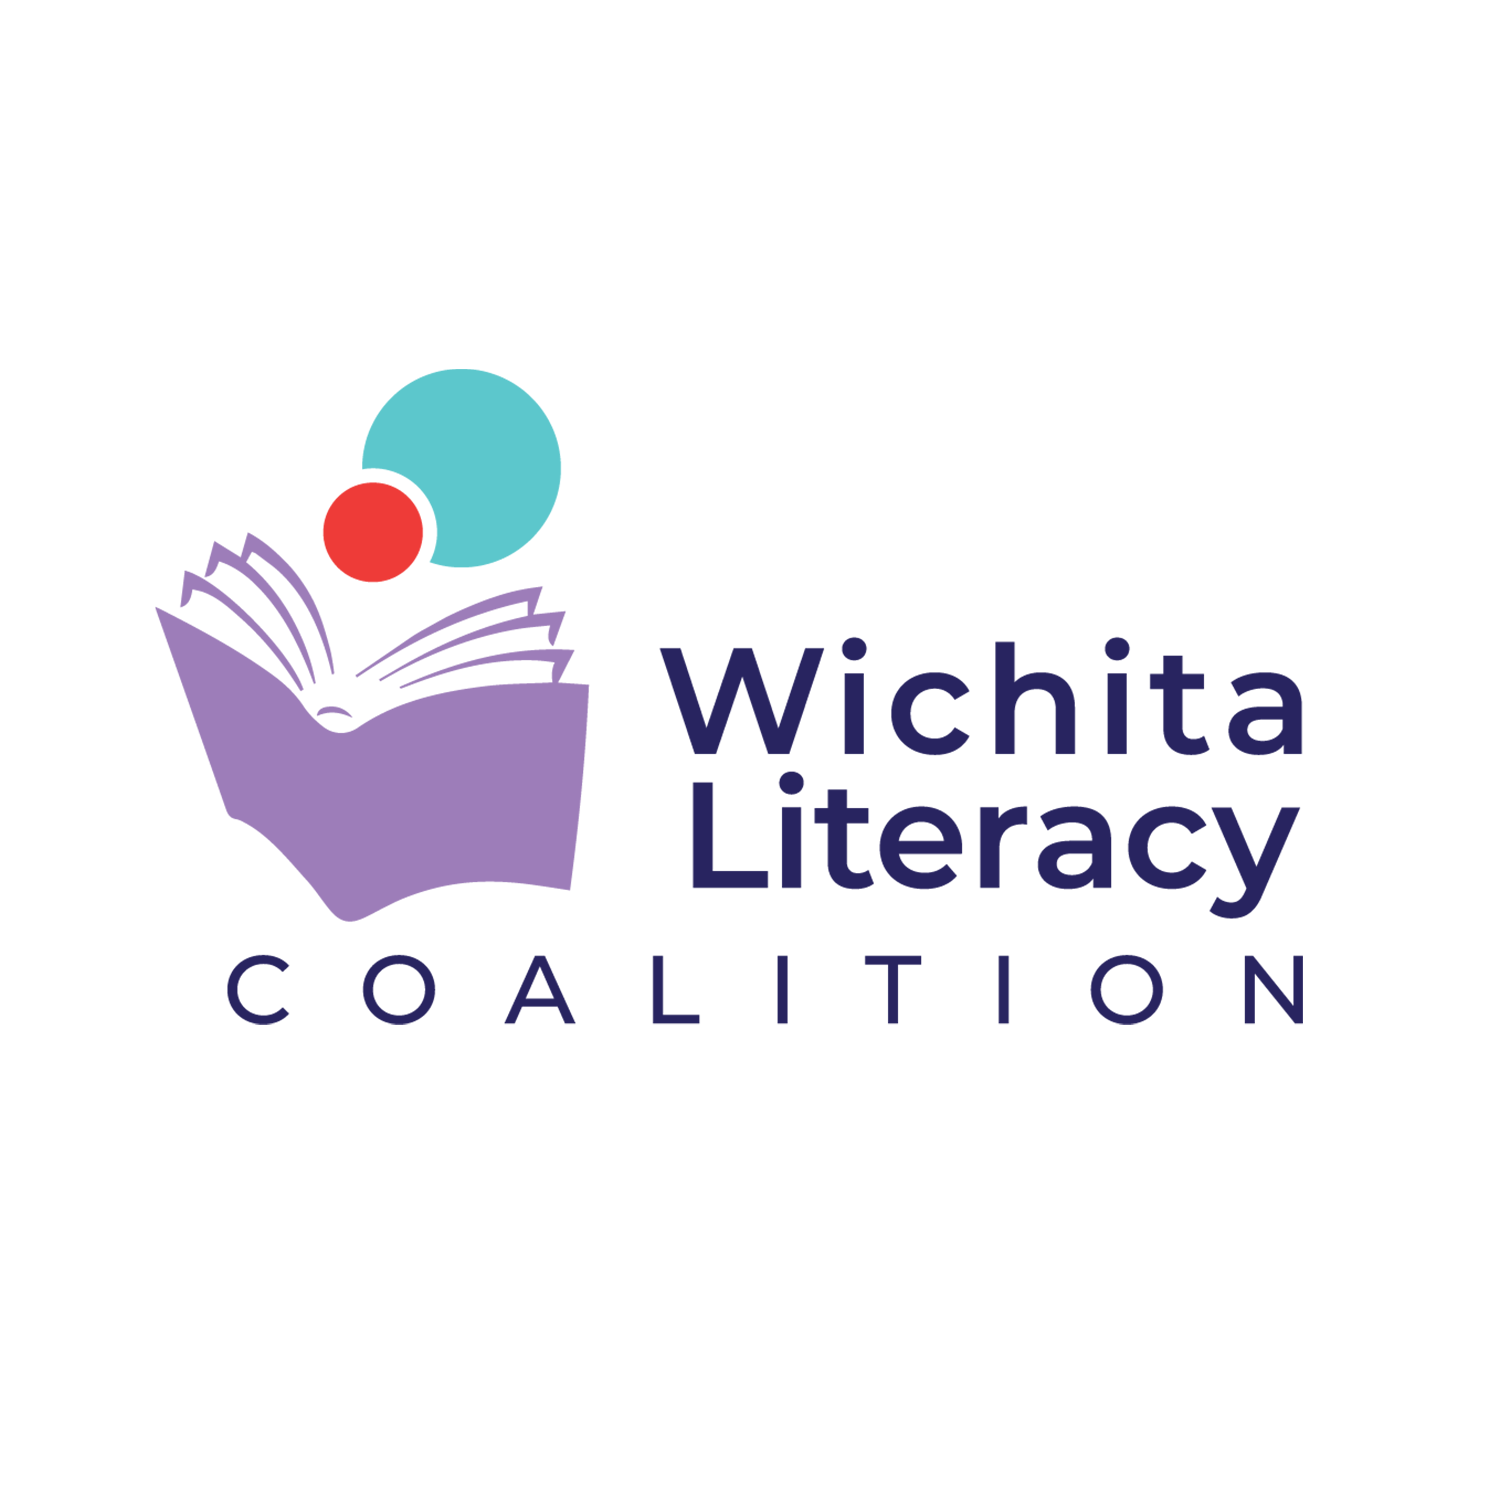 Wichita Literacy Coalition